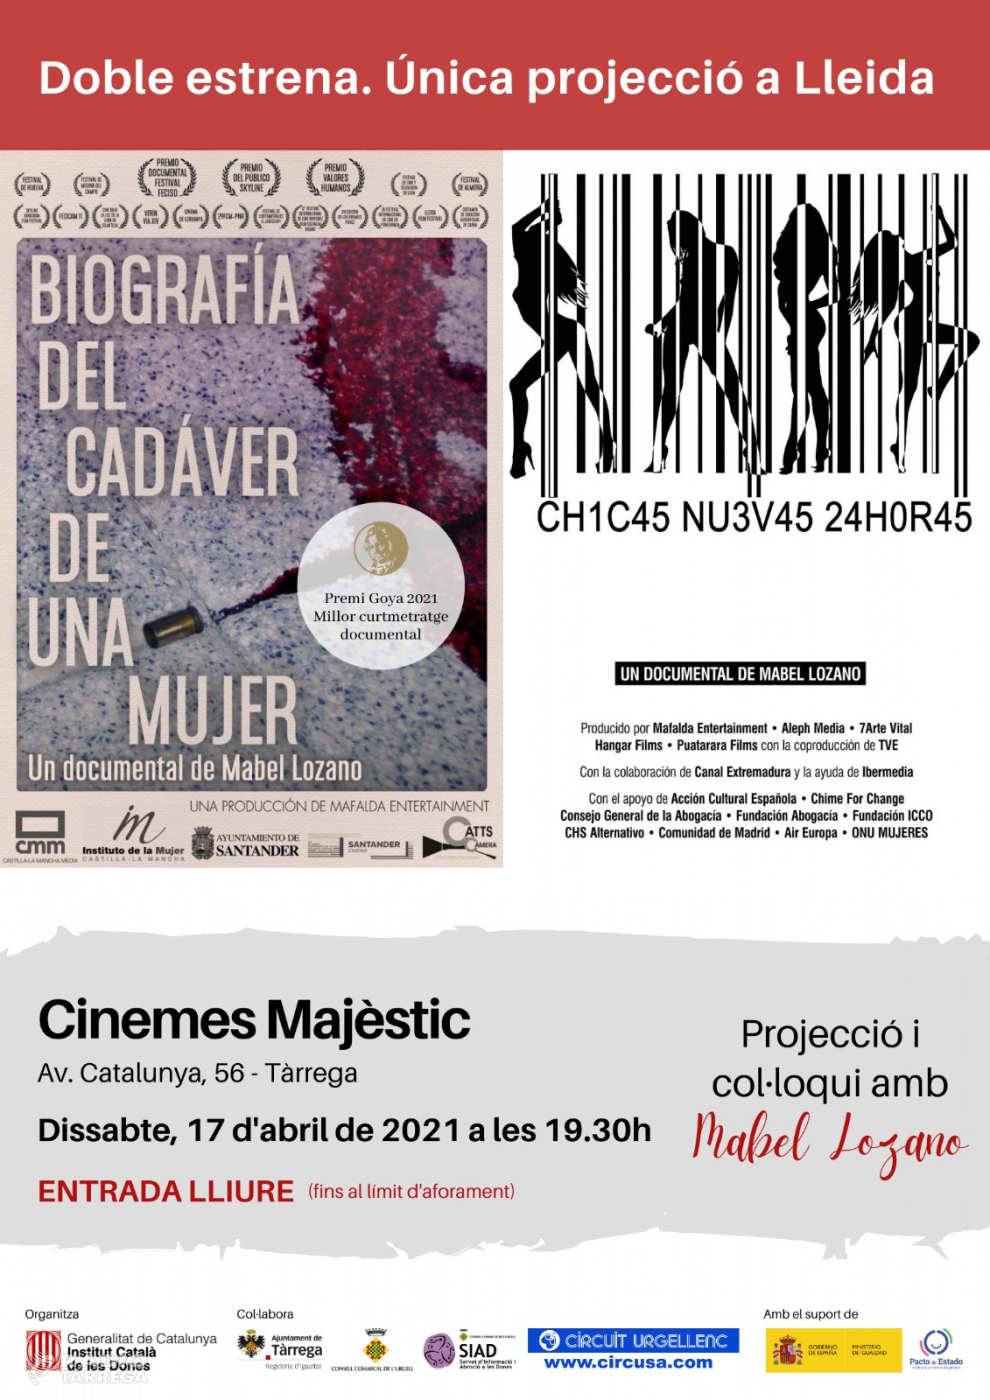 Tàrrega acollirà l’estrena a Lleida del curtmetratge documental de Mabel Lozano premiat amb un Goya i que denuncia l’explotació sexual de les dones